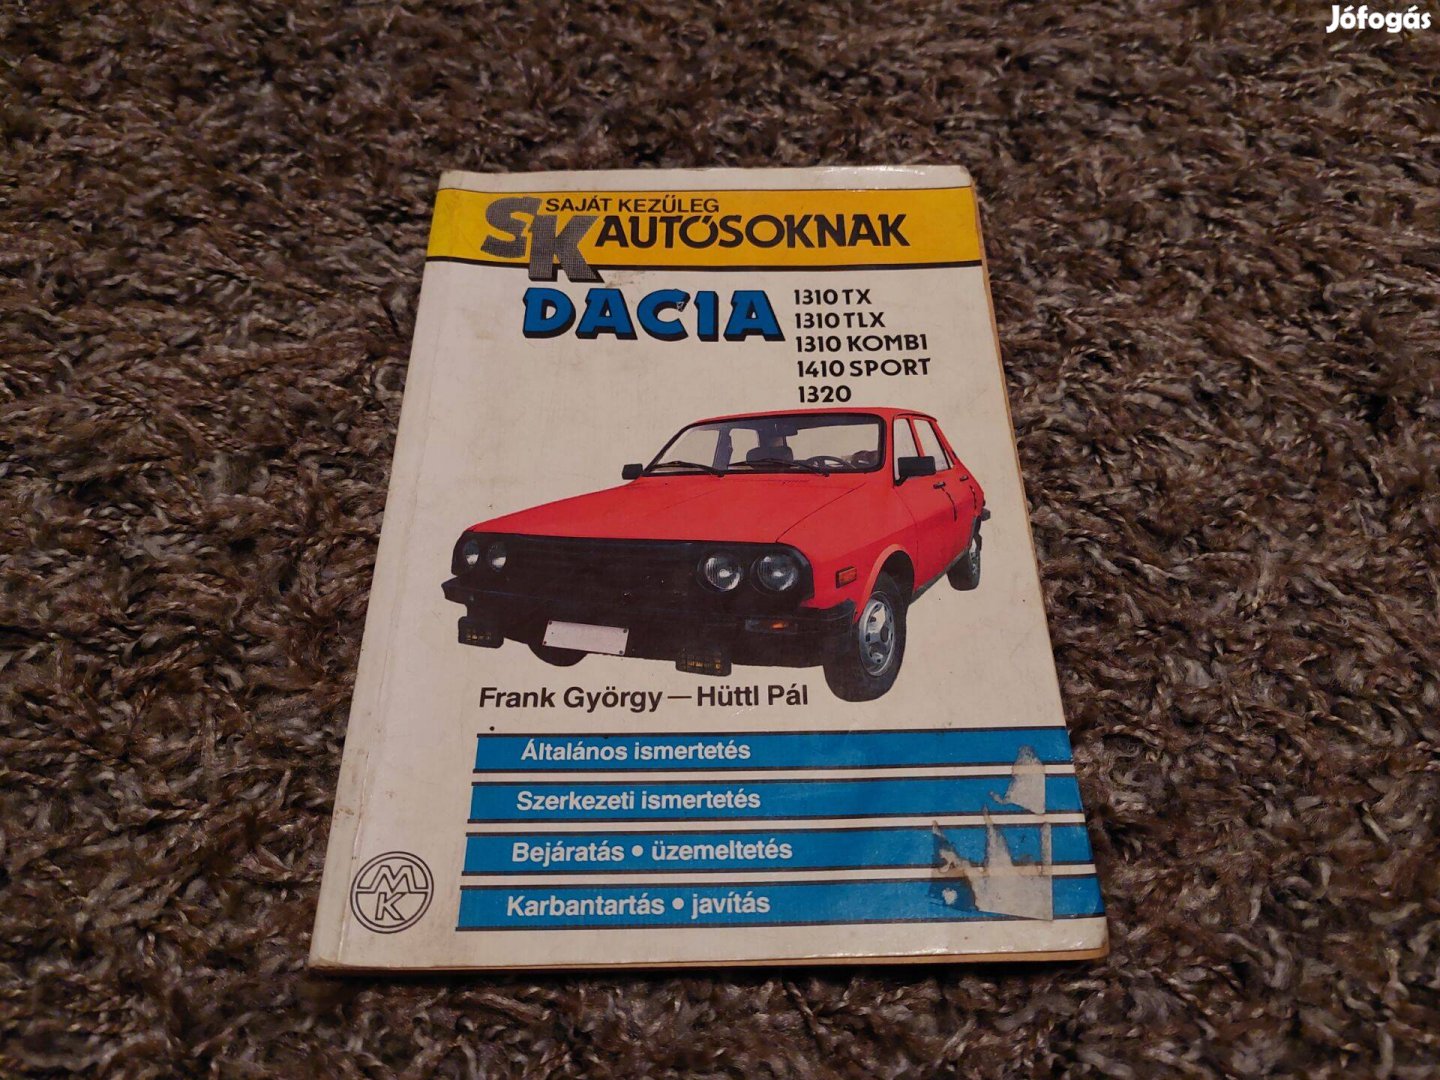 Dacia 1310 tx tlx kombi 1410 sport 1320 kezelési utasítás könyv